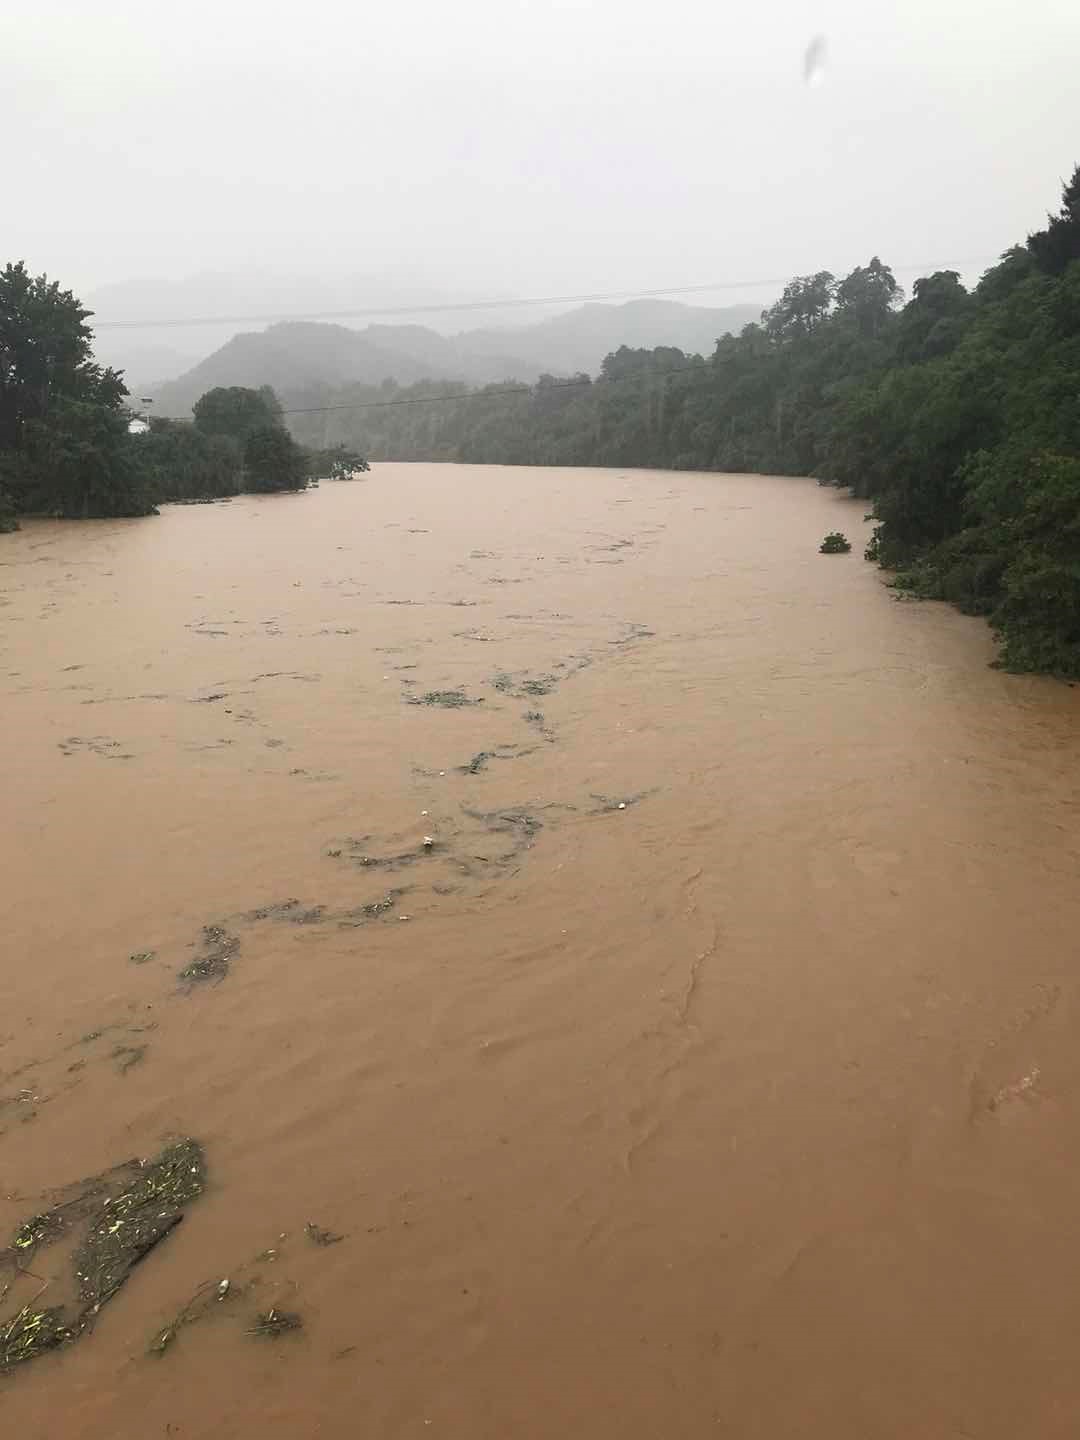 Inundações em Anren, Província de Hunan, China, 7 th junho 2018 (Imagem por DUAN Xinping).